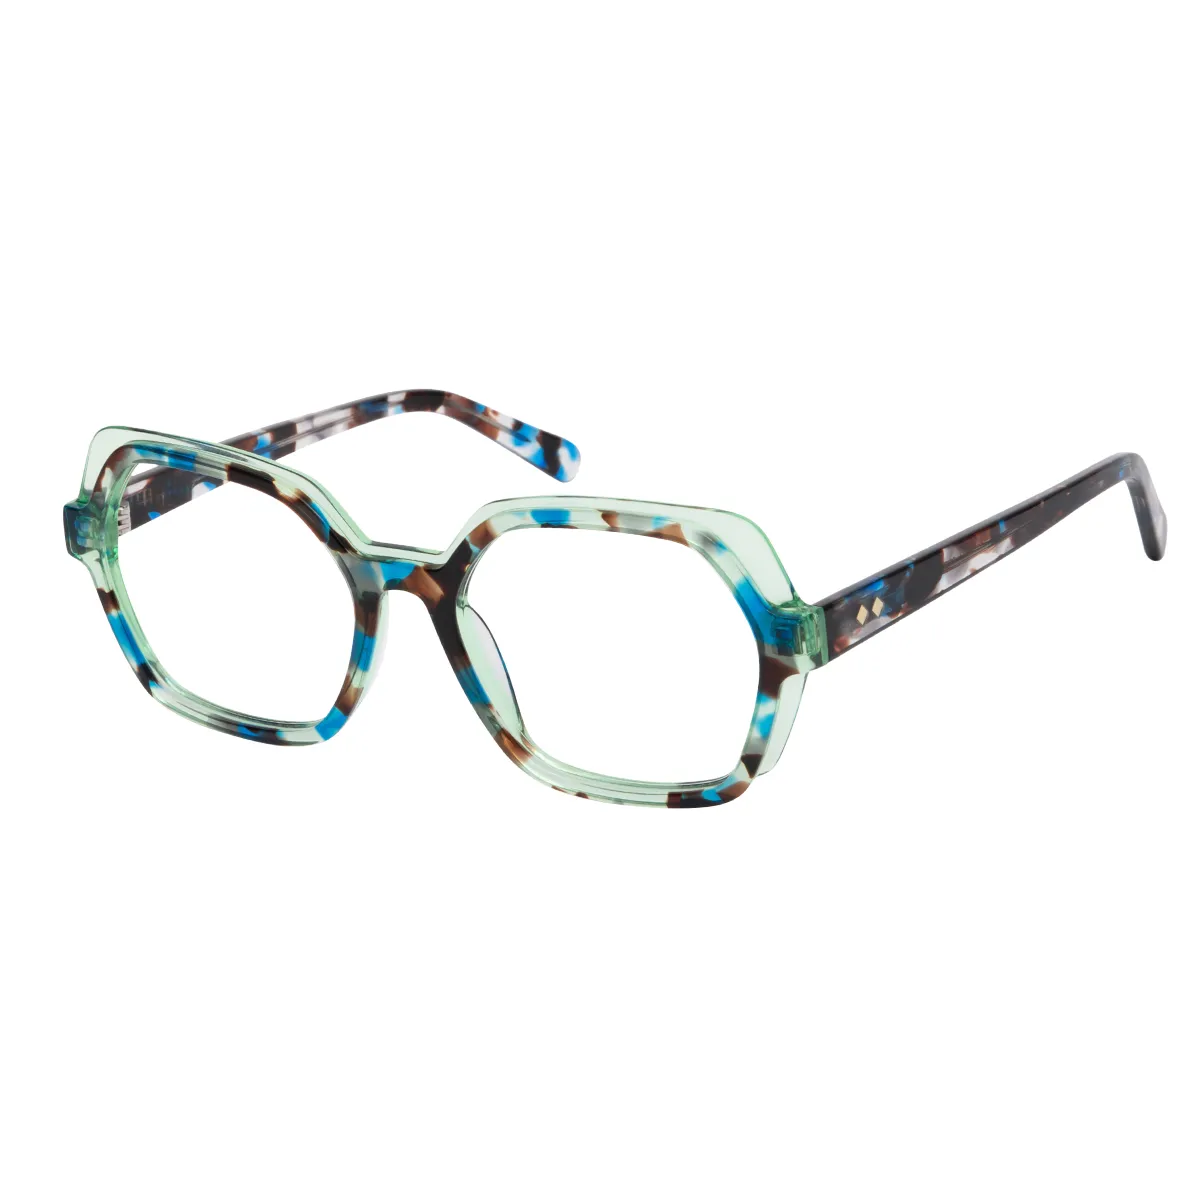 Zelenko - Square Tortoiseshell-Blue Glasses for Women